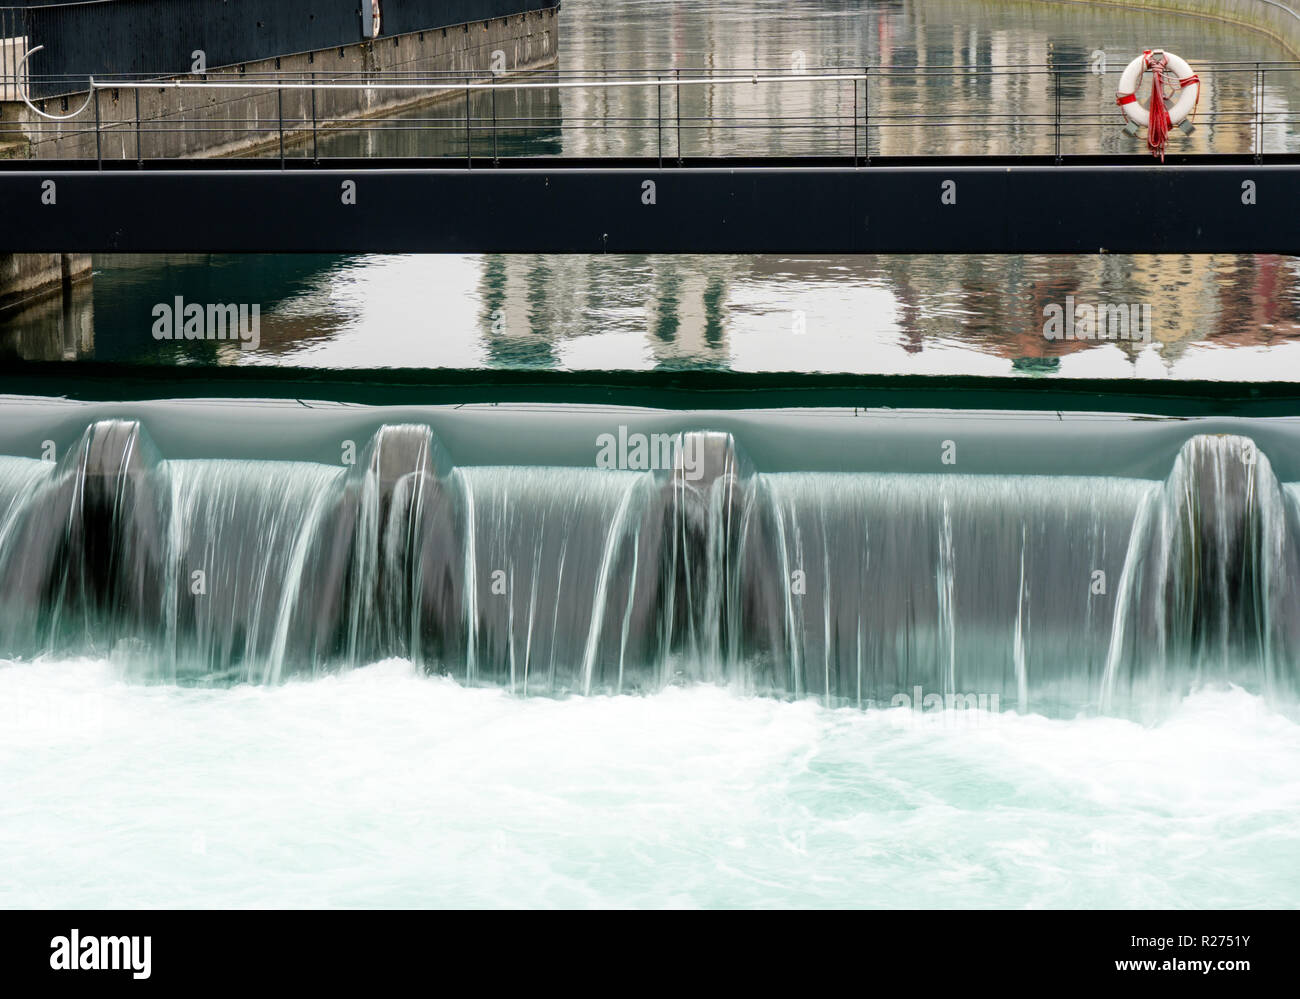 Gros plan d'une digue en béton d'origine humaine à Lucerne avec le bleu de la rivière Reuss sur elle en cascade et une passerelle métallique avec un anneau de sauvetage et d'équipement derrière Banque D'Images